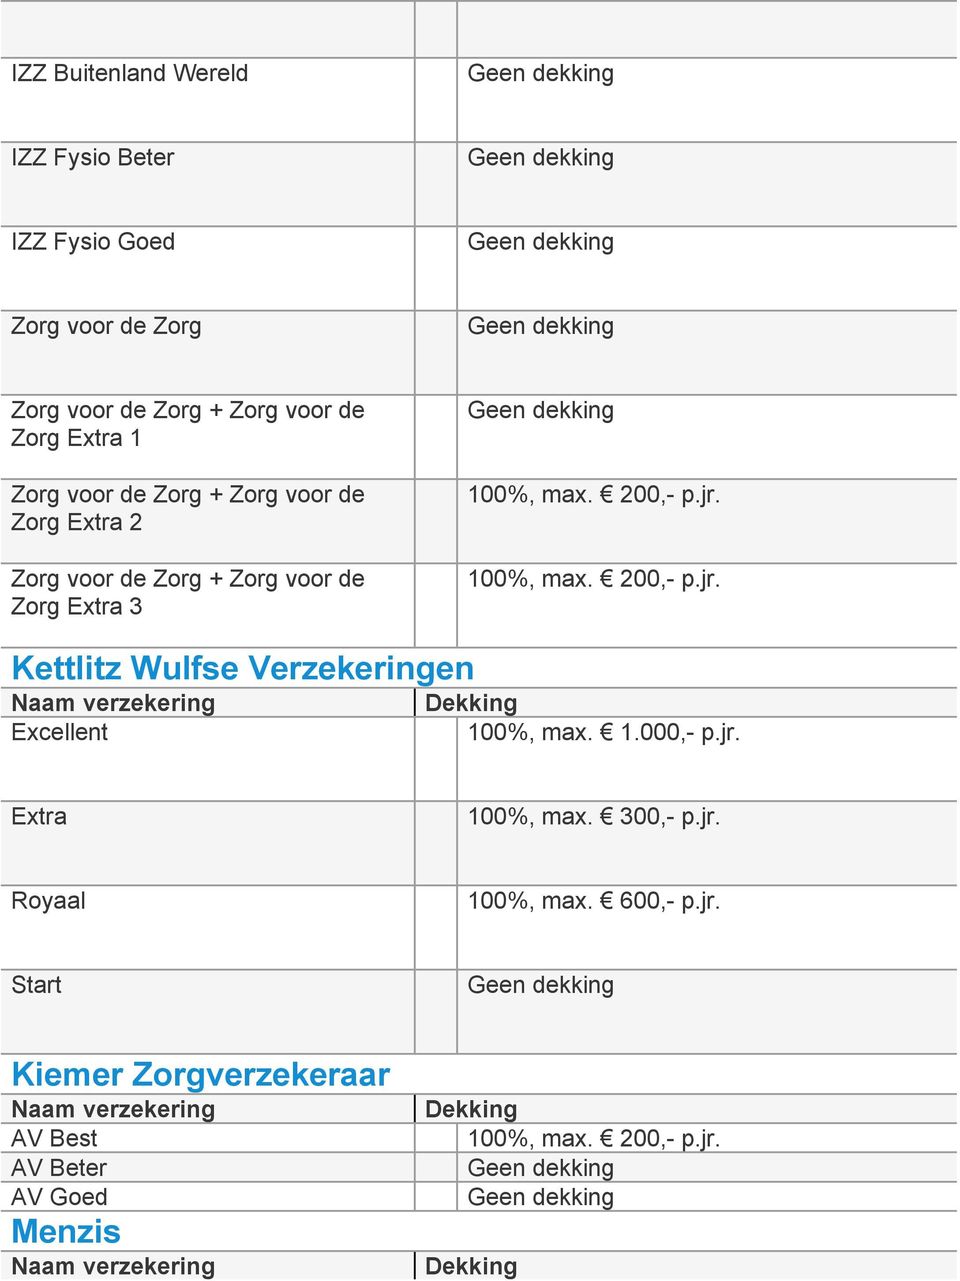 voor de Zorg + Zorg voor de Zorg Extra 3 Kettlitz Wulfse Verzekeringen Excellent 100%,